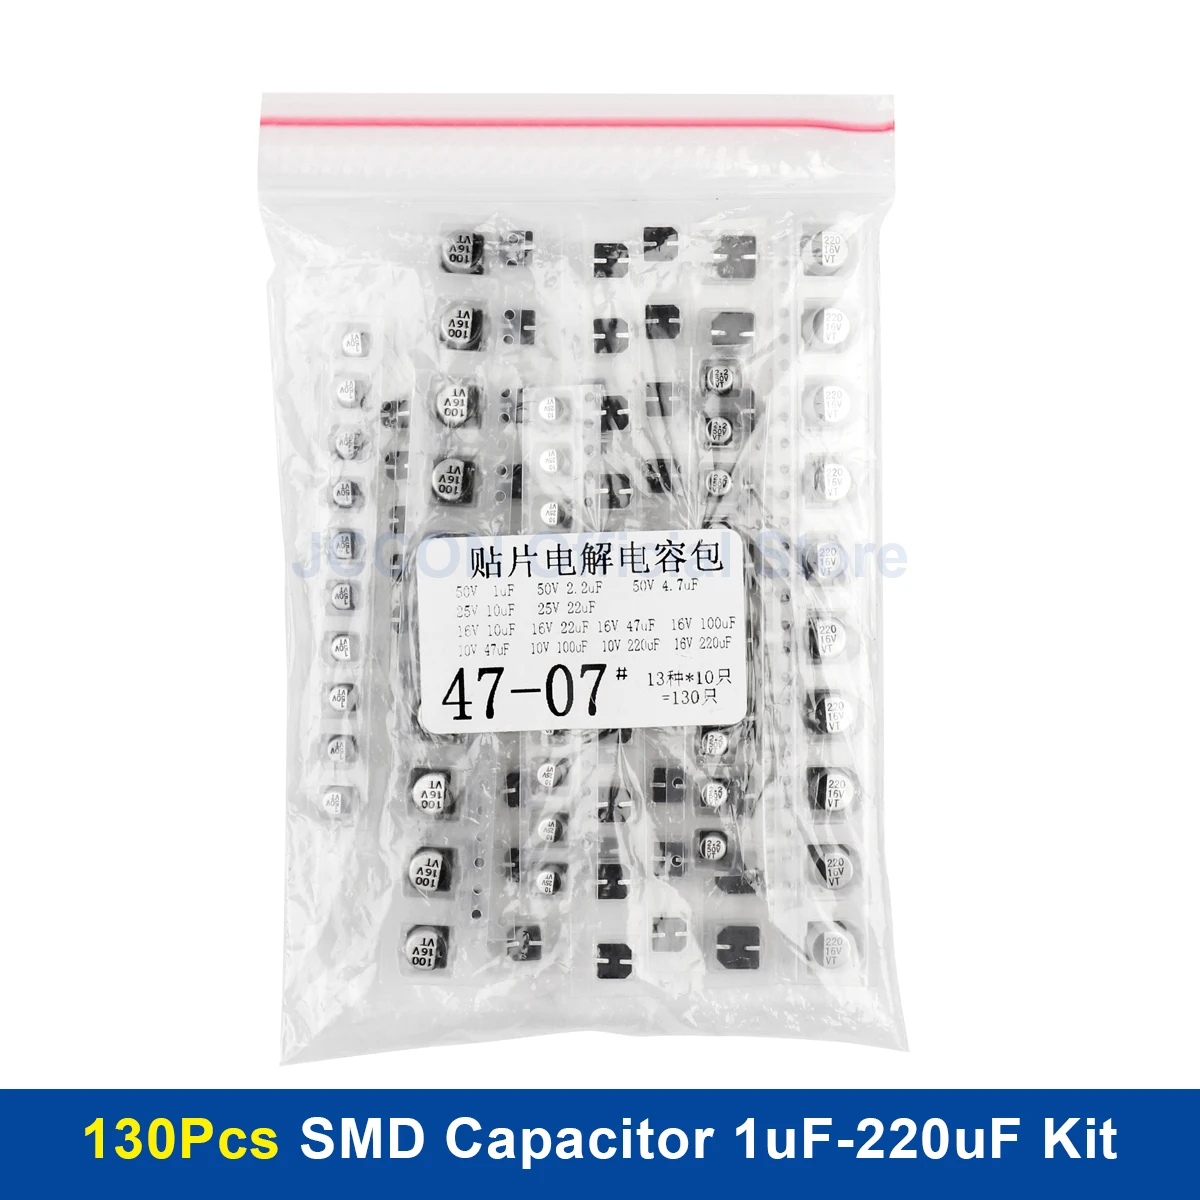 

130Pcs/lot 1uF-220uF SMD Aluminum Electrolytic Capacitor Assorted Kit Set 13Values Samples Kit 1UF 2.2UF 4.7UF 10UF 22UF 47UF 10